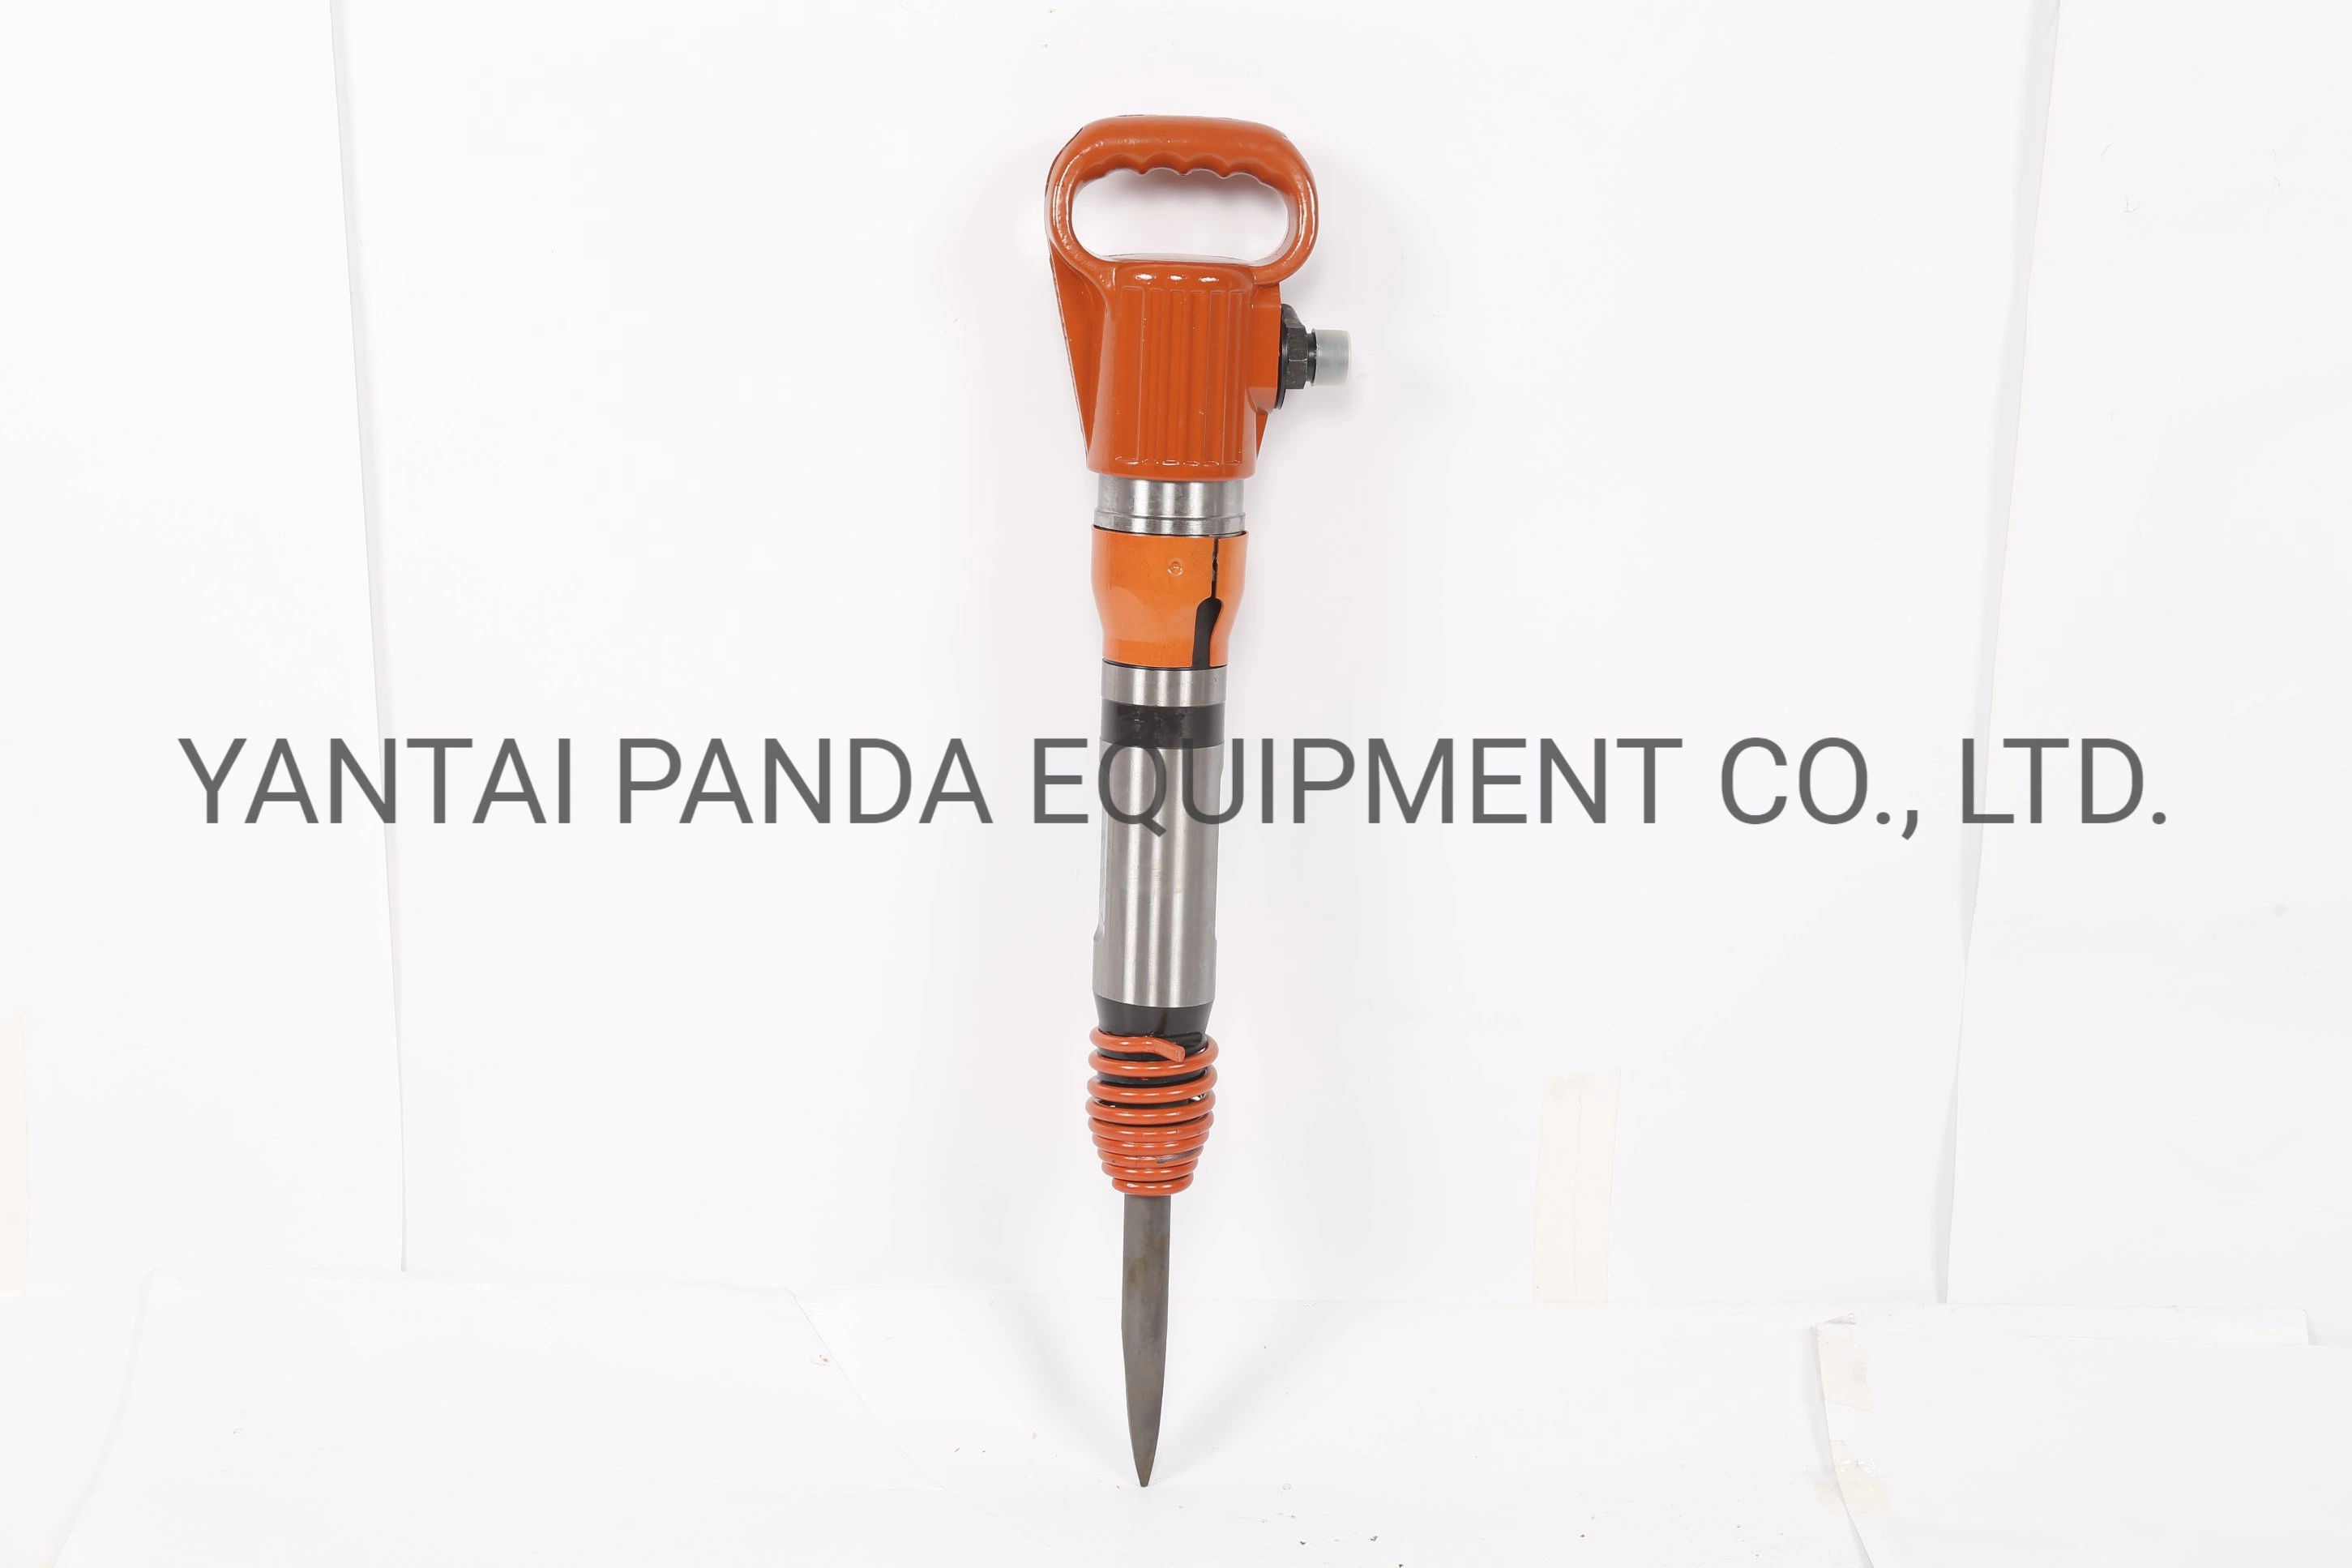 Kaishan Hand-Hold G10 de recogida neumática portátil eléctrico martillo neumático Herramienta neumática máquina de perforación de roca